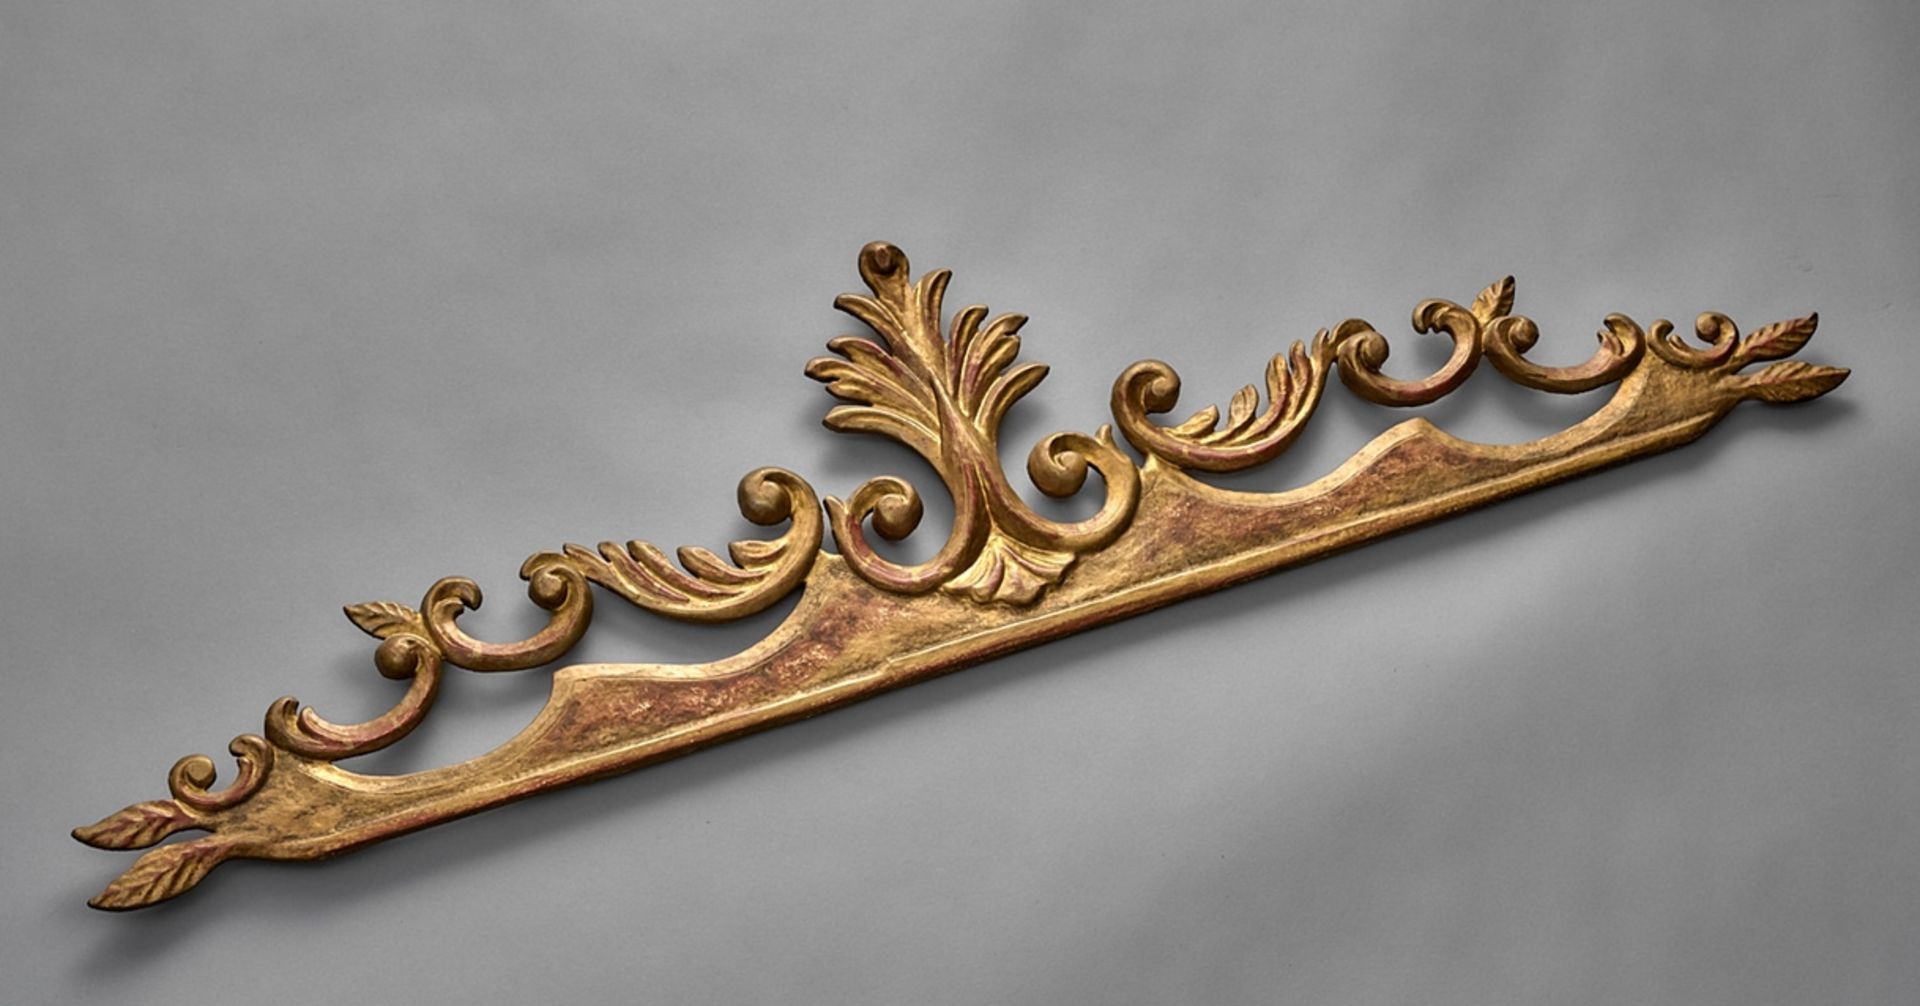 Supraporte im Barockstil. Holz polimentvergoldet. Um 1900. L 106 cm